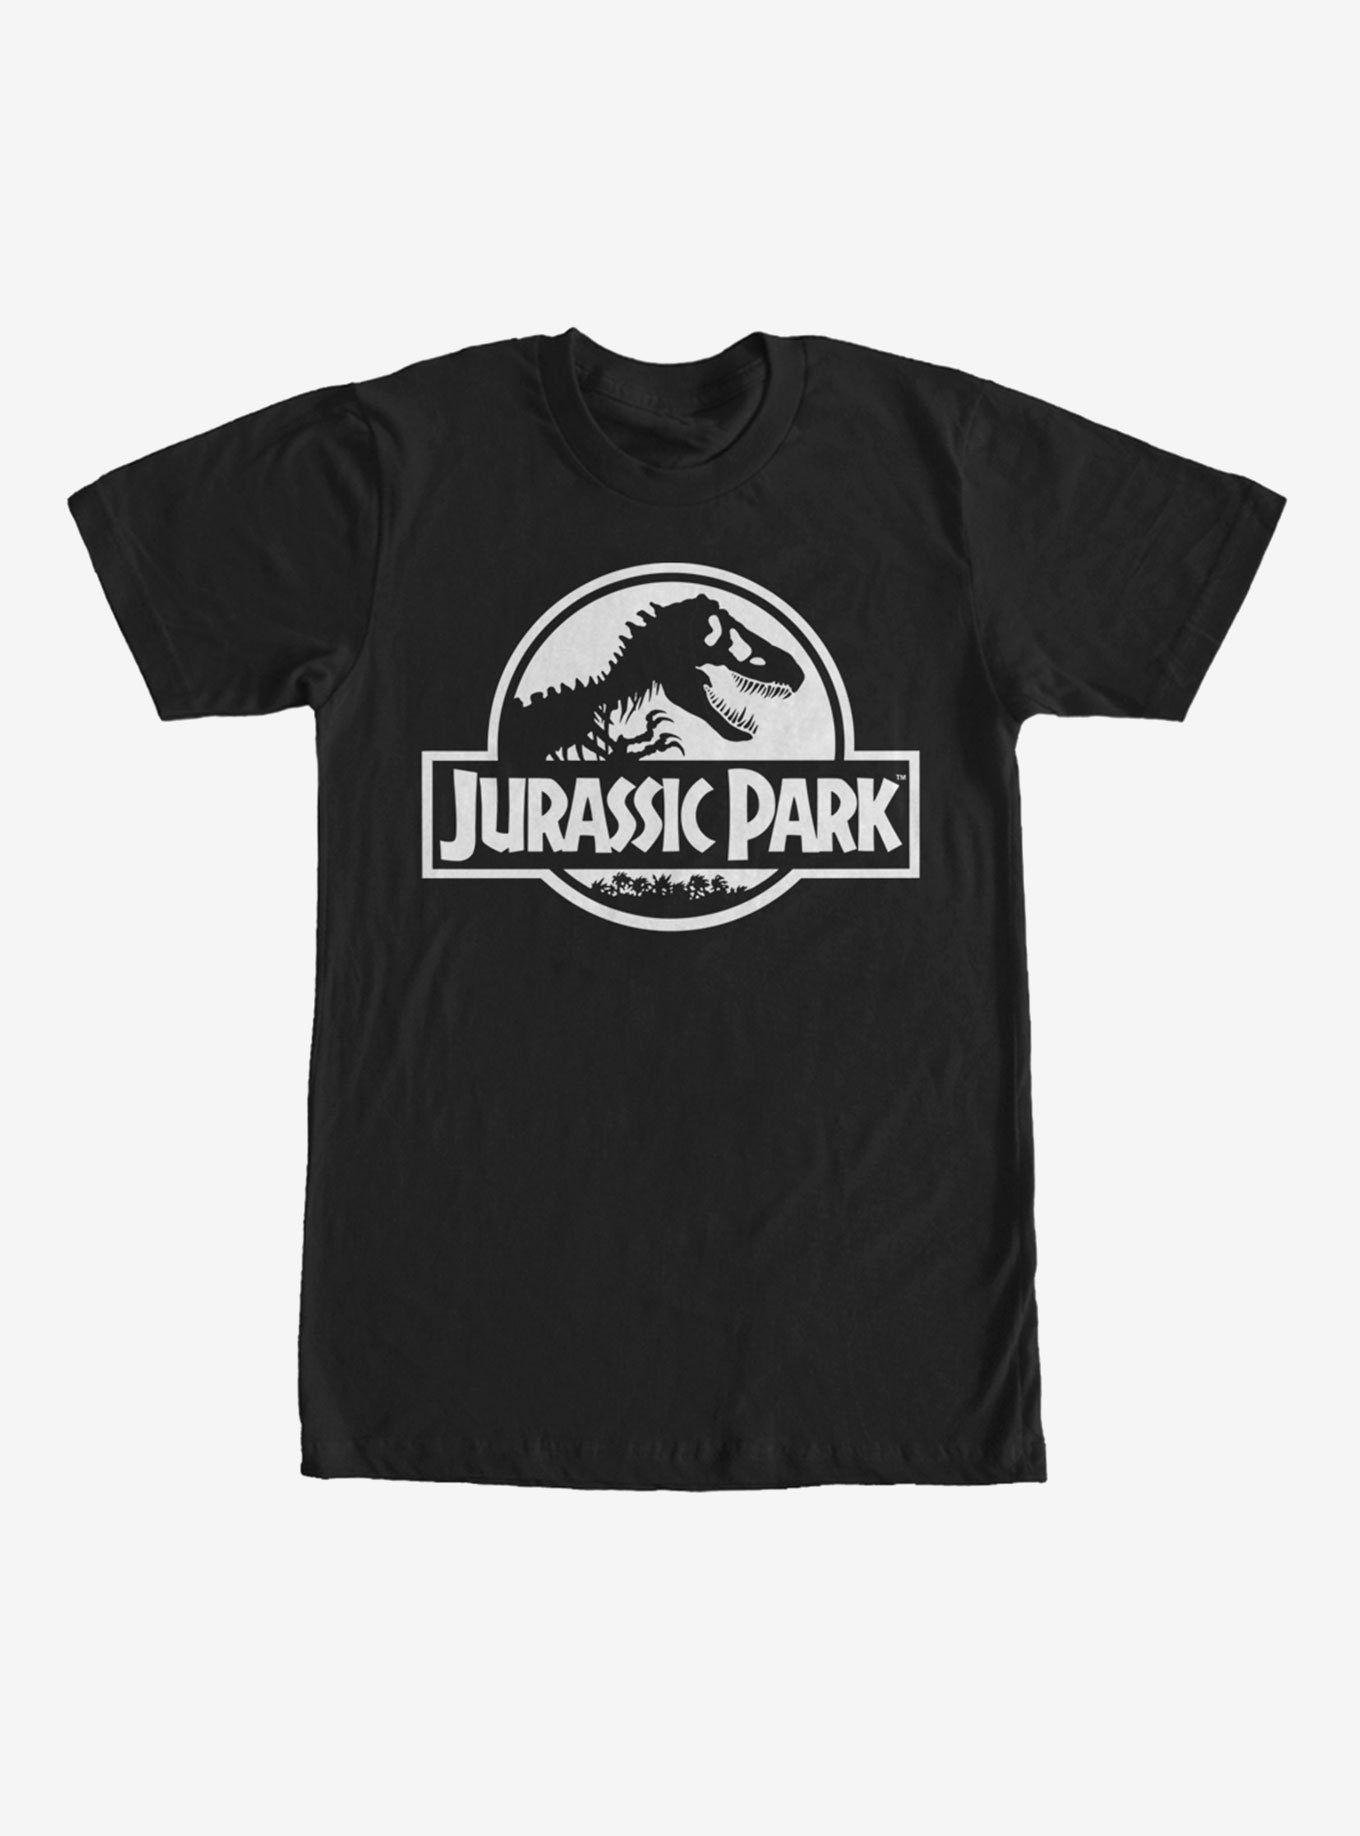 Jurassic Park Black and White Logo - Jurassic Park Dinosaur Logo T-Shirt